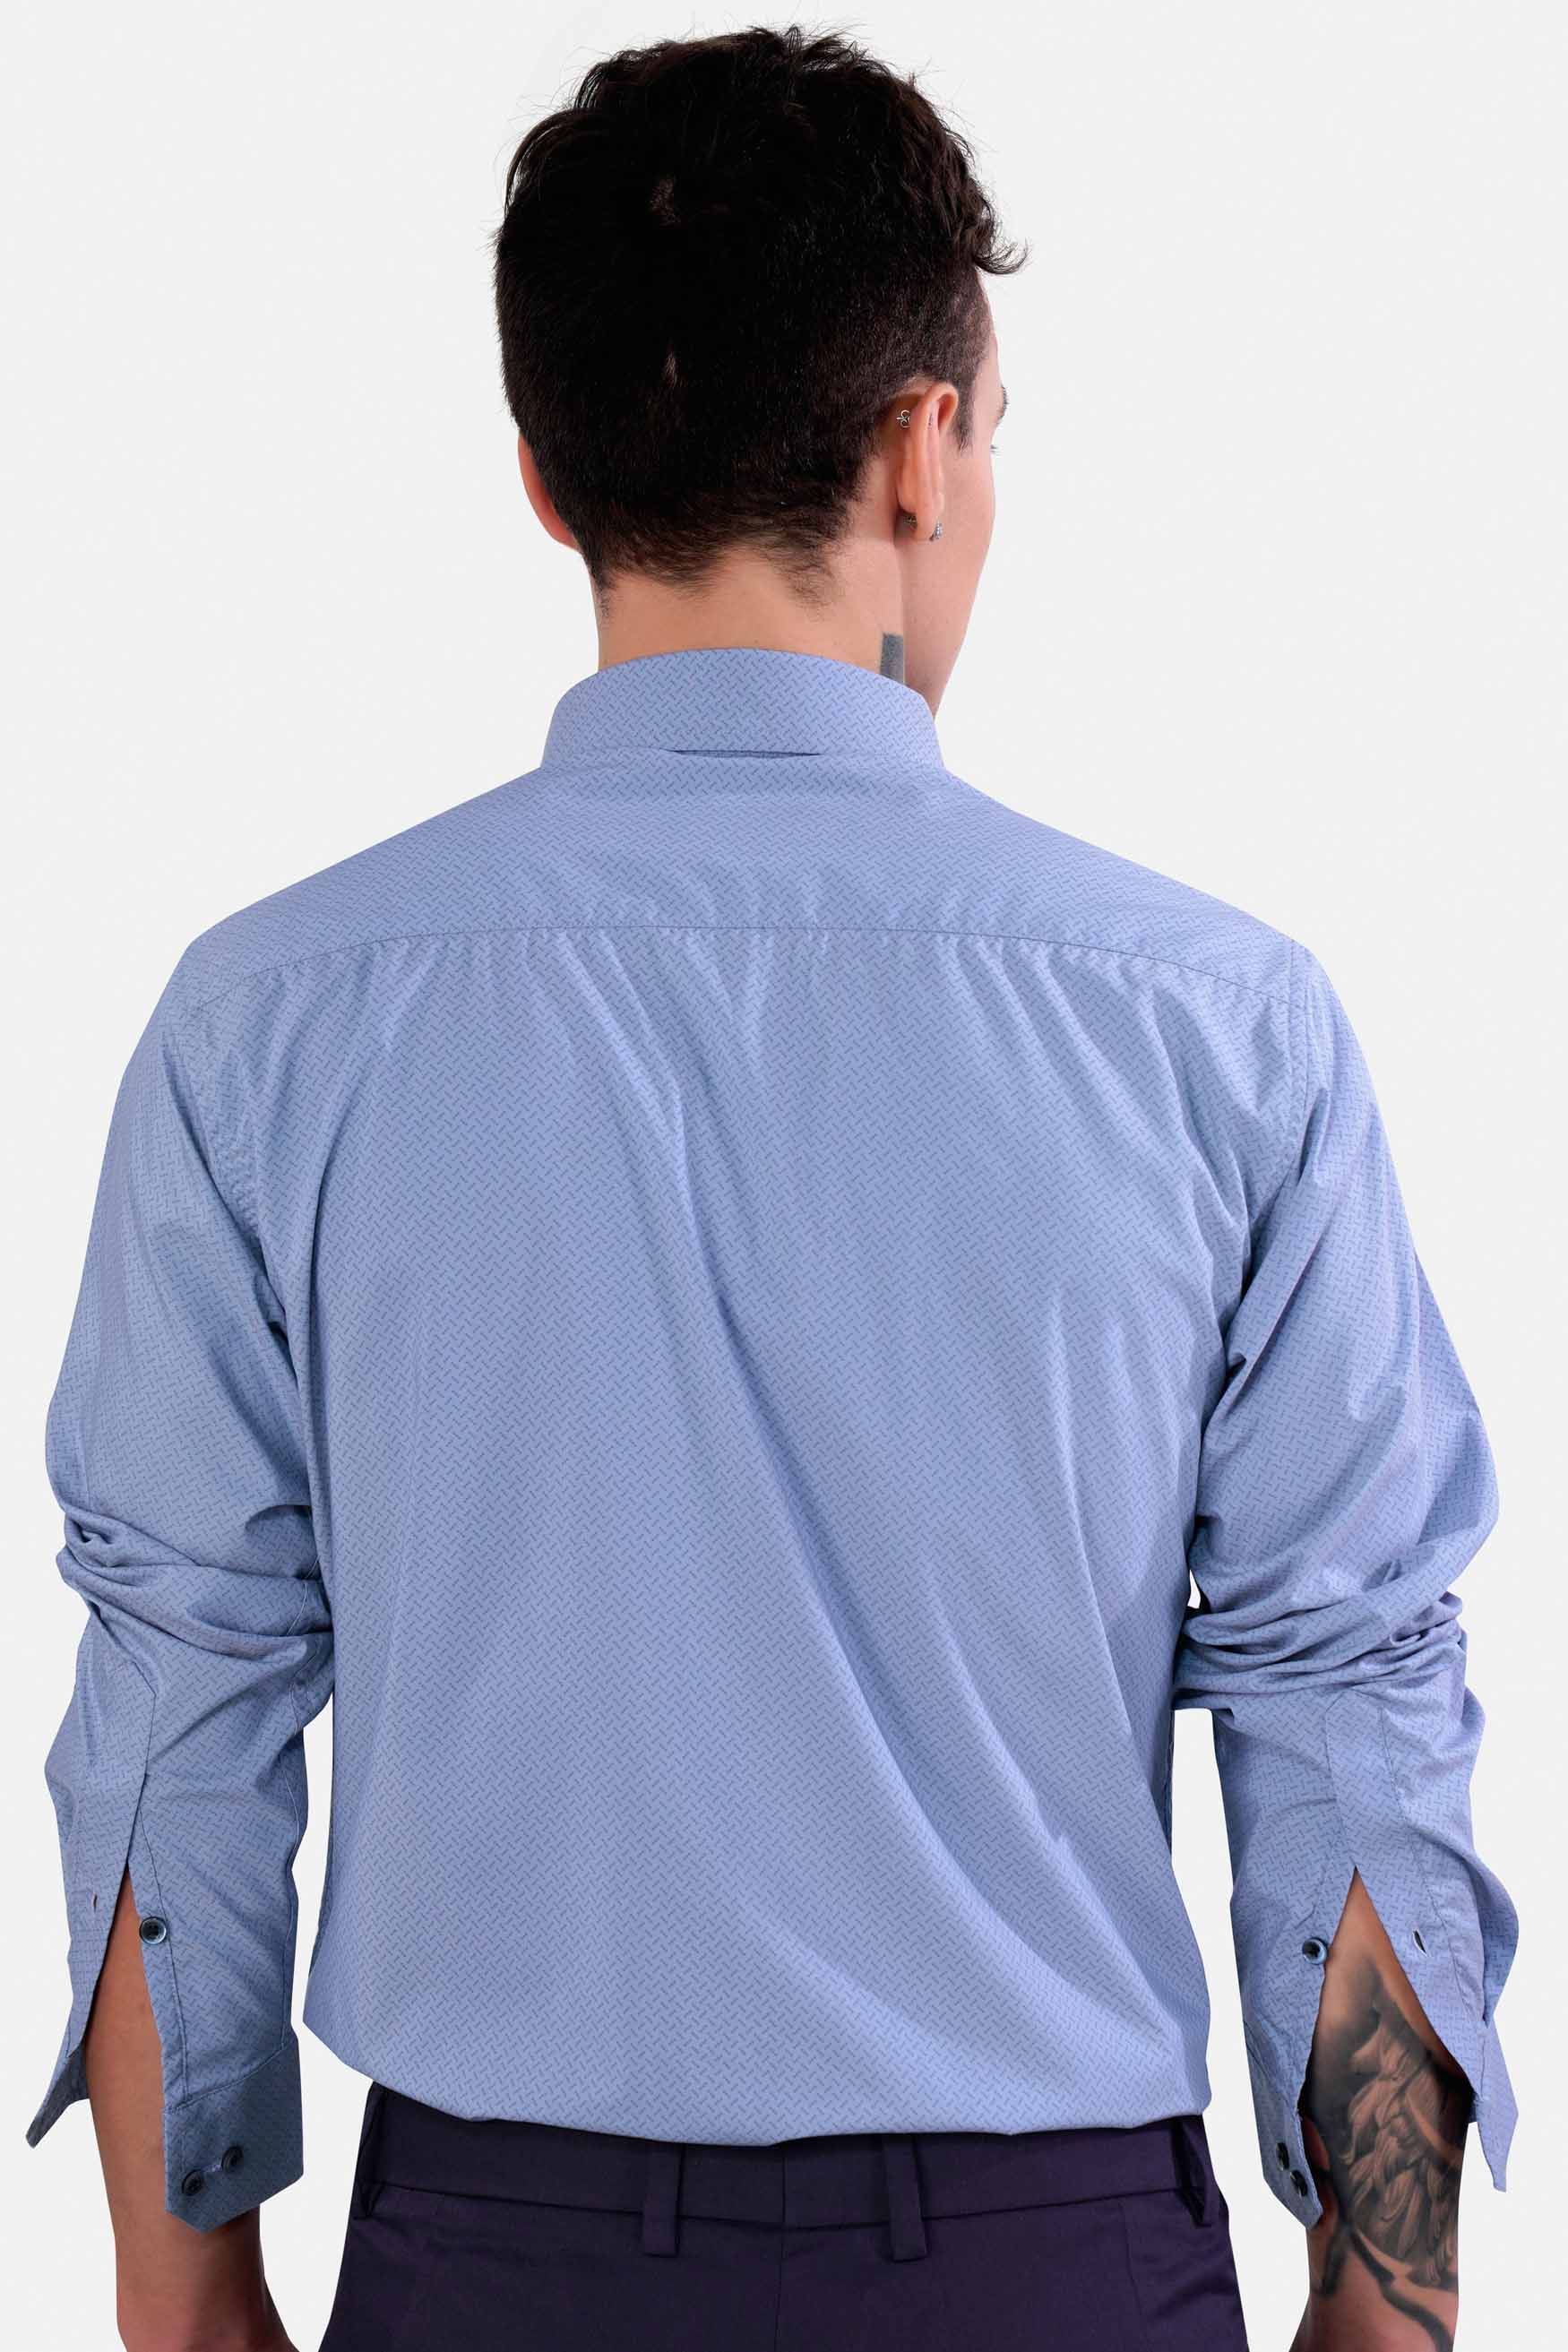 Cloudy Blue and Glaucous Blue Premium Cotton Shirt